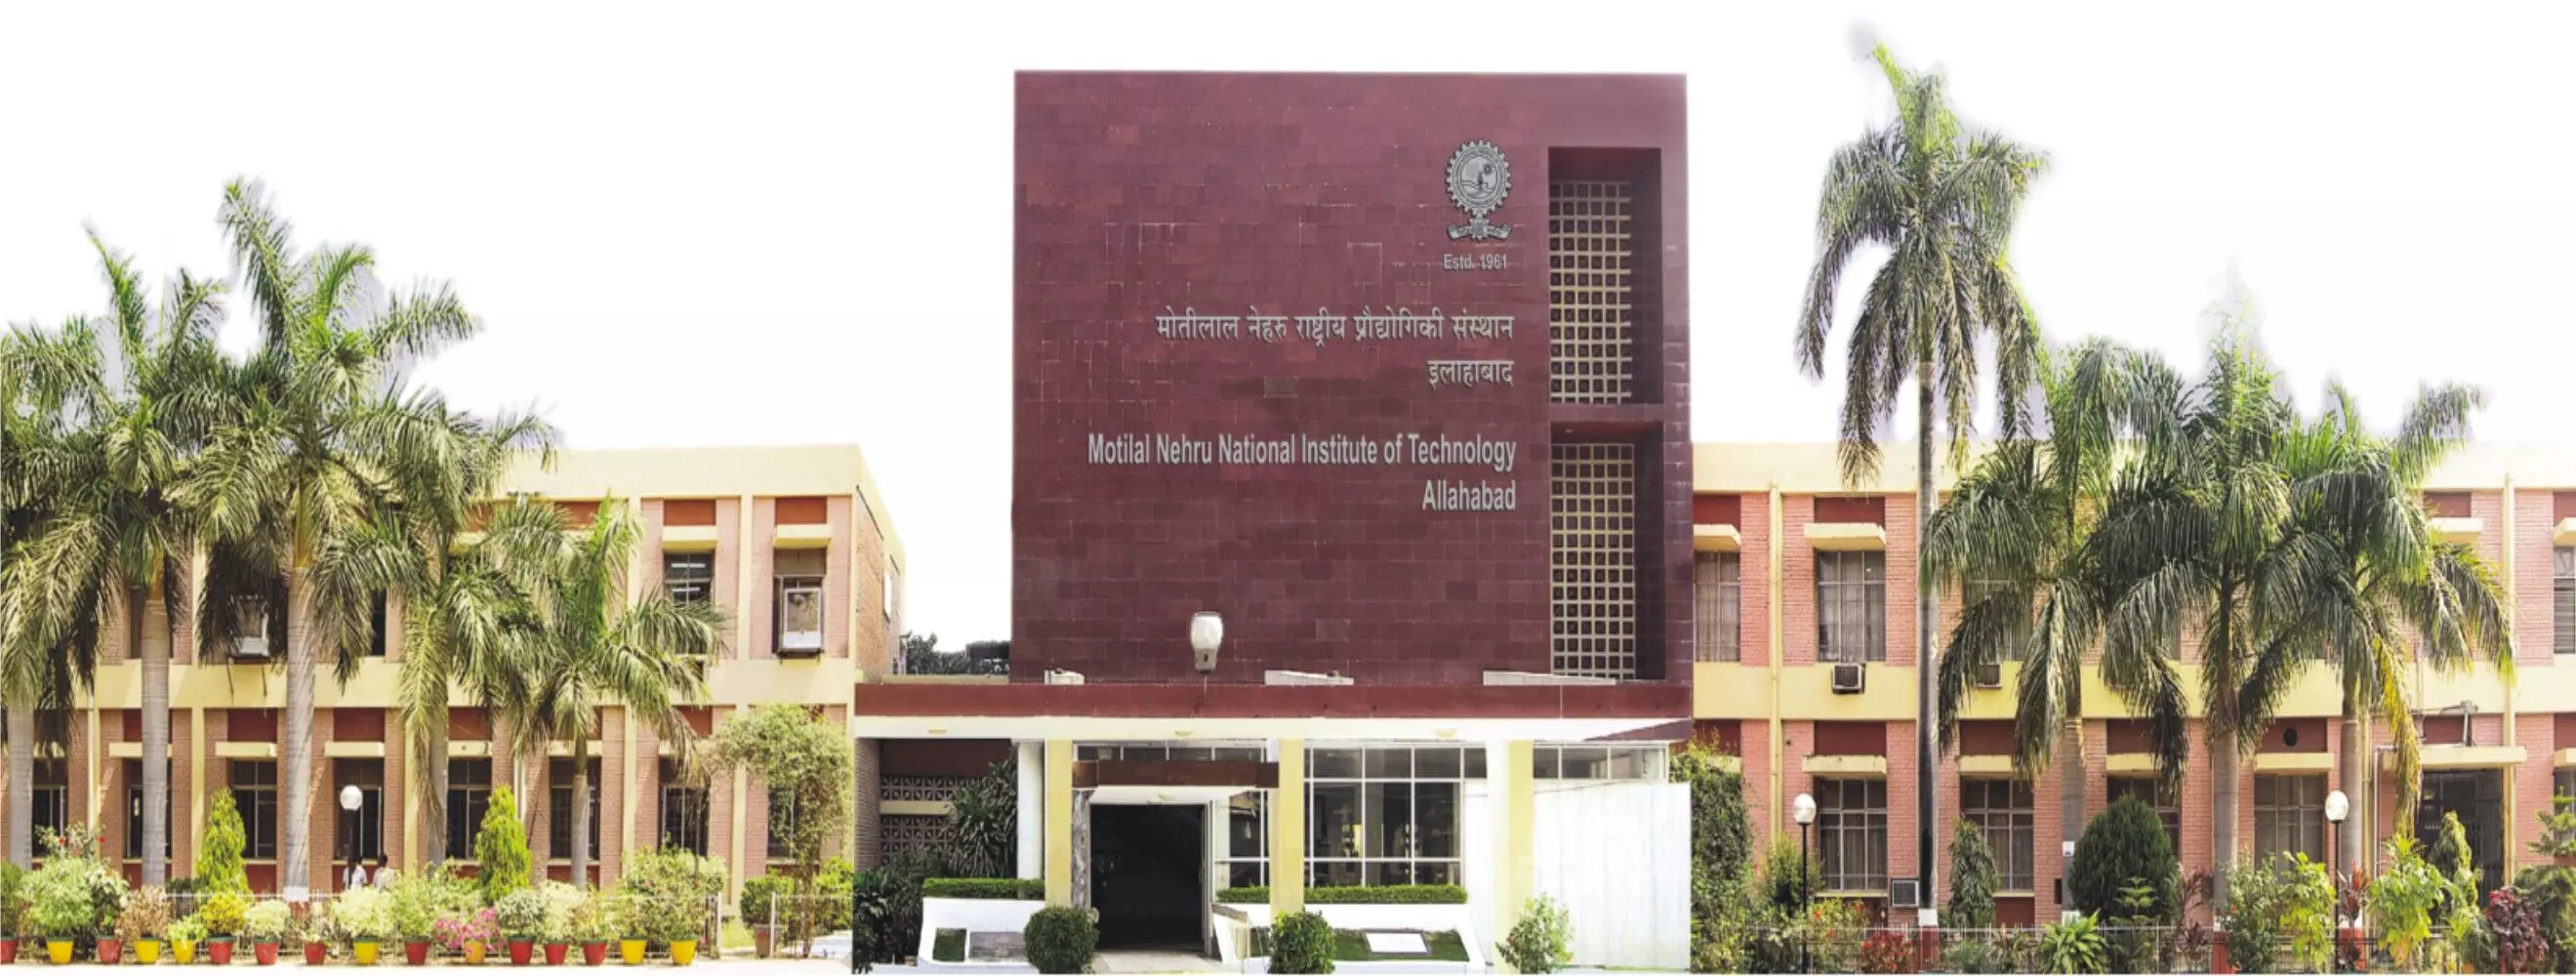 मोतीलाल नेहरू राष्ट्रीय प्रौद्योगिकी संस्थान में प्रवेश लेने वाले छात्र-छात्राओं के लिए अच्छी खबर